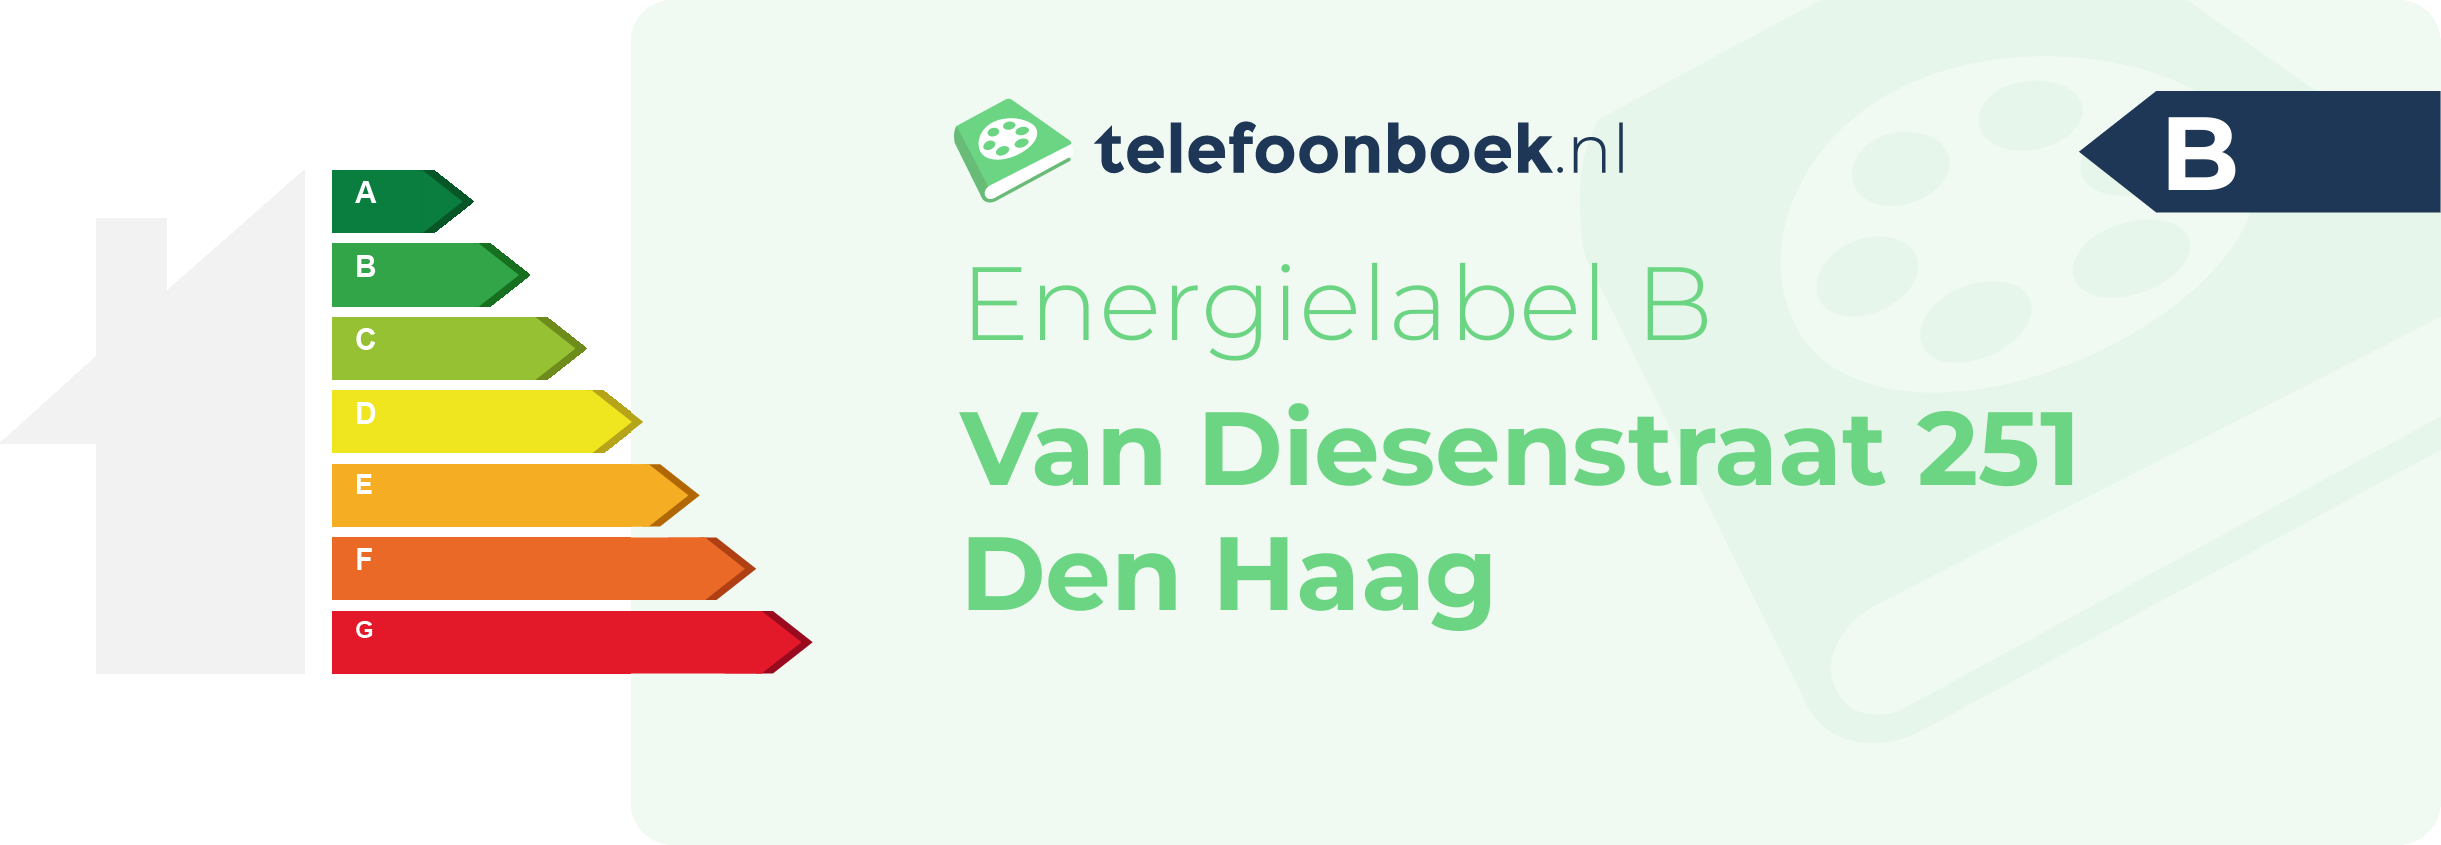 Energielabel Van Diesenstraat 251 Den Haag